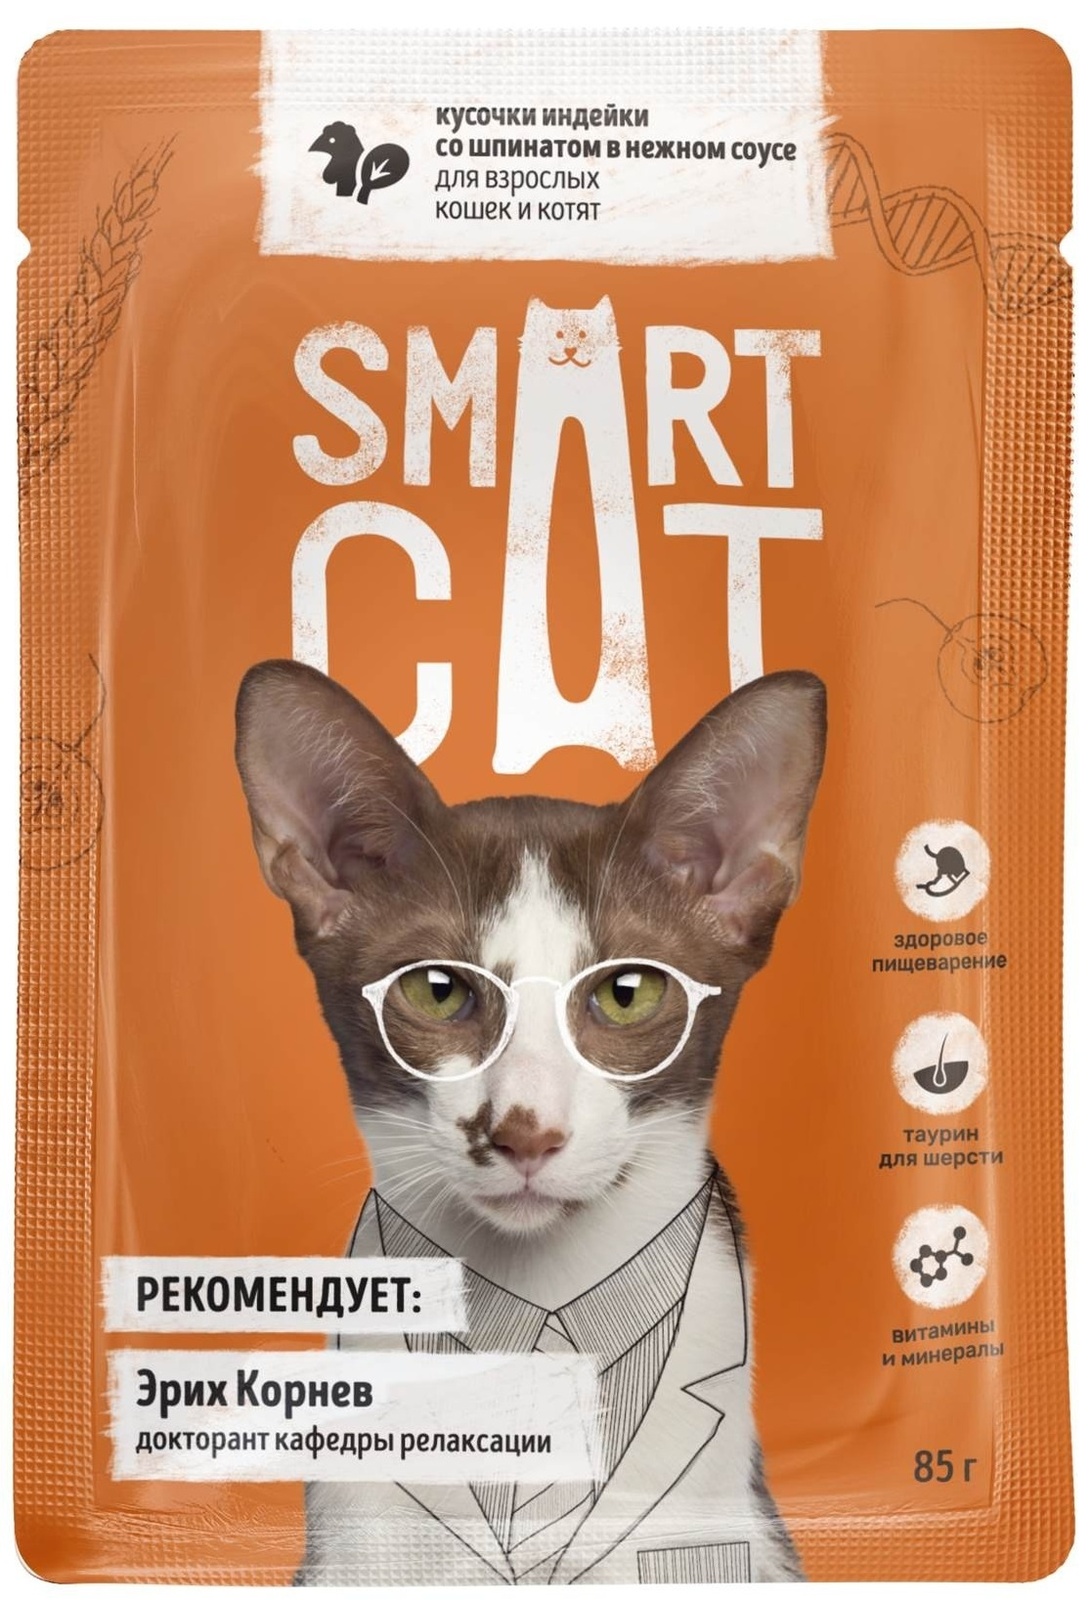 цена Smart Cat Smart Cat паучи для взрослых кошек и котят: кусочки индейки со шпинатом в нежном соусе (85 г)